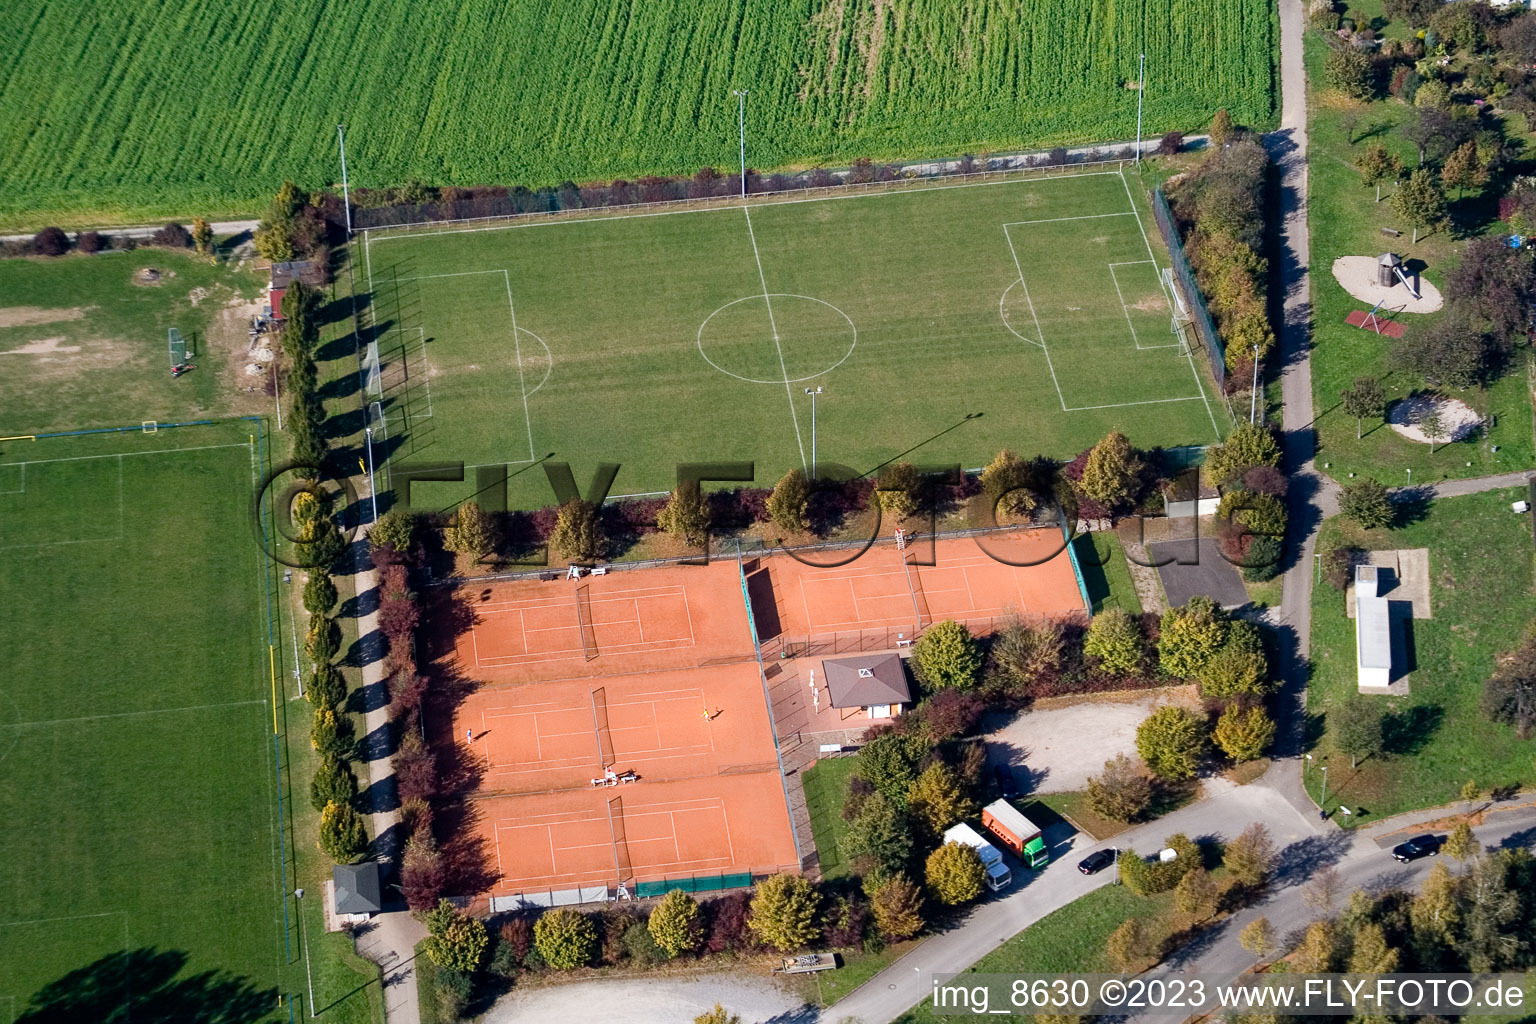 Ortsteil Hohenwettersbach in Karlsruhe im Bundesland Baden-Württemberg, Deutschland aus der Drohnenperspektive